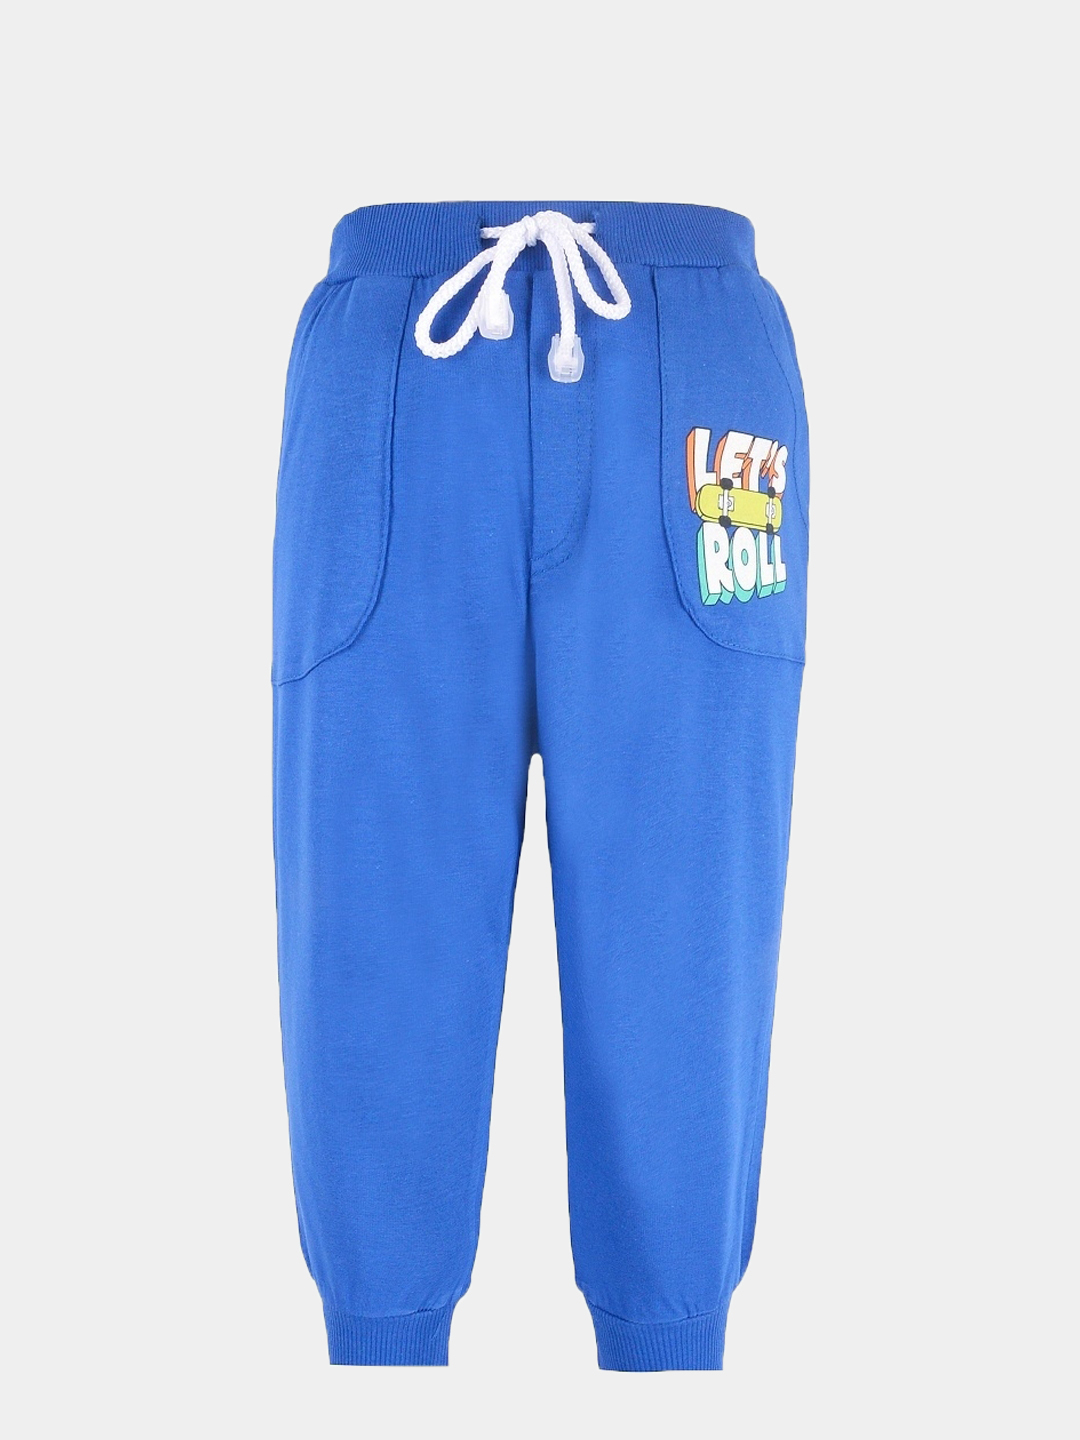 Детские спортивные брюки, штаны для мальчика (2 - 6 лет) купить по цене 449₽ в интернет-магазине KazanExpress